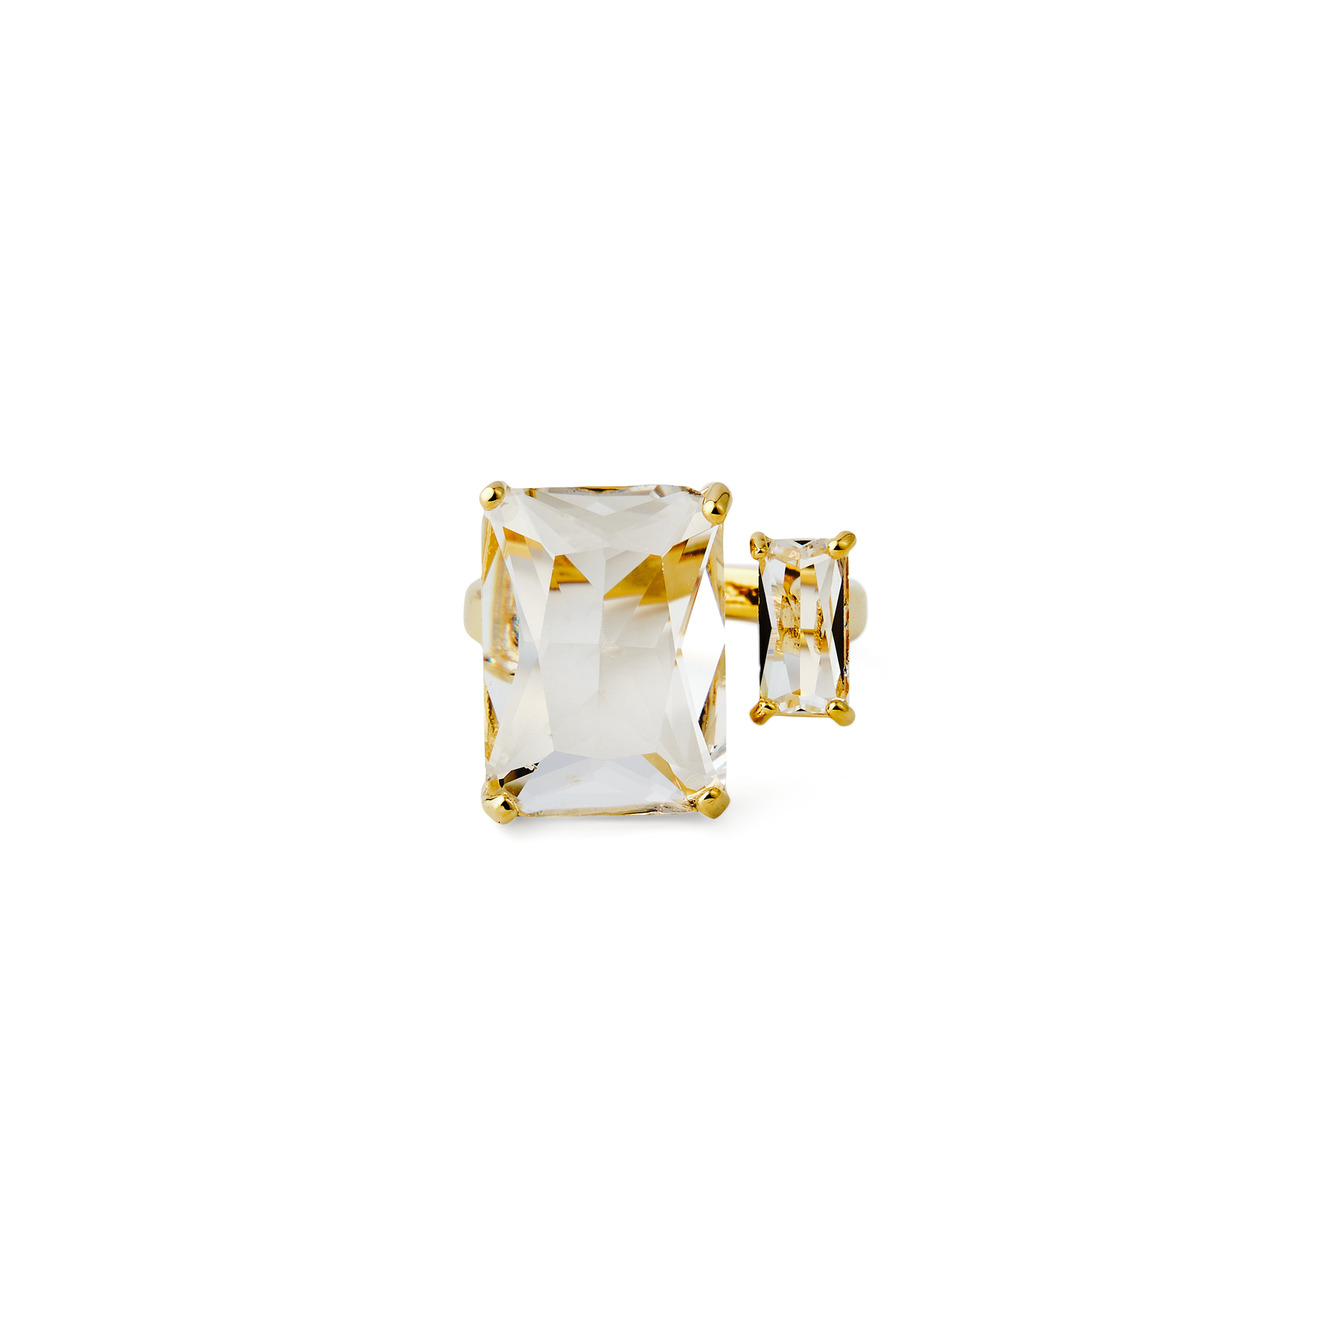 Herald Percy Золотистое кольцо с двумя разными кристаллами herald percy золотистое кольцо с овальным кристаллом